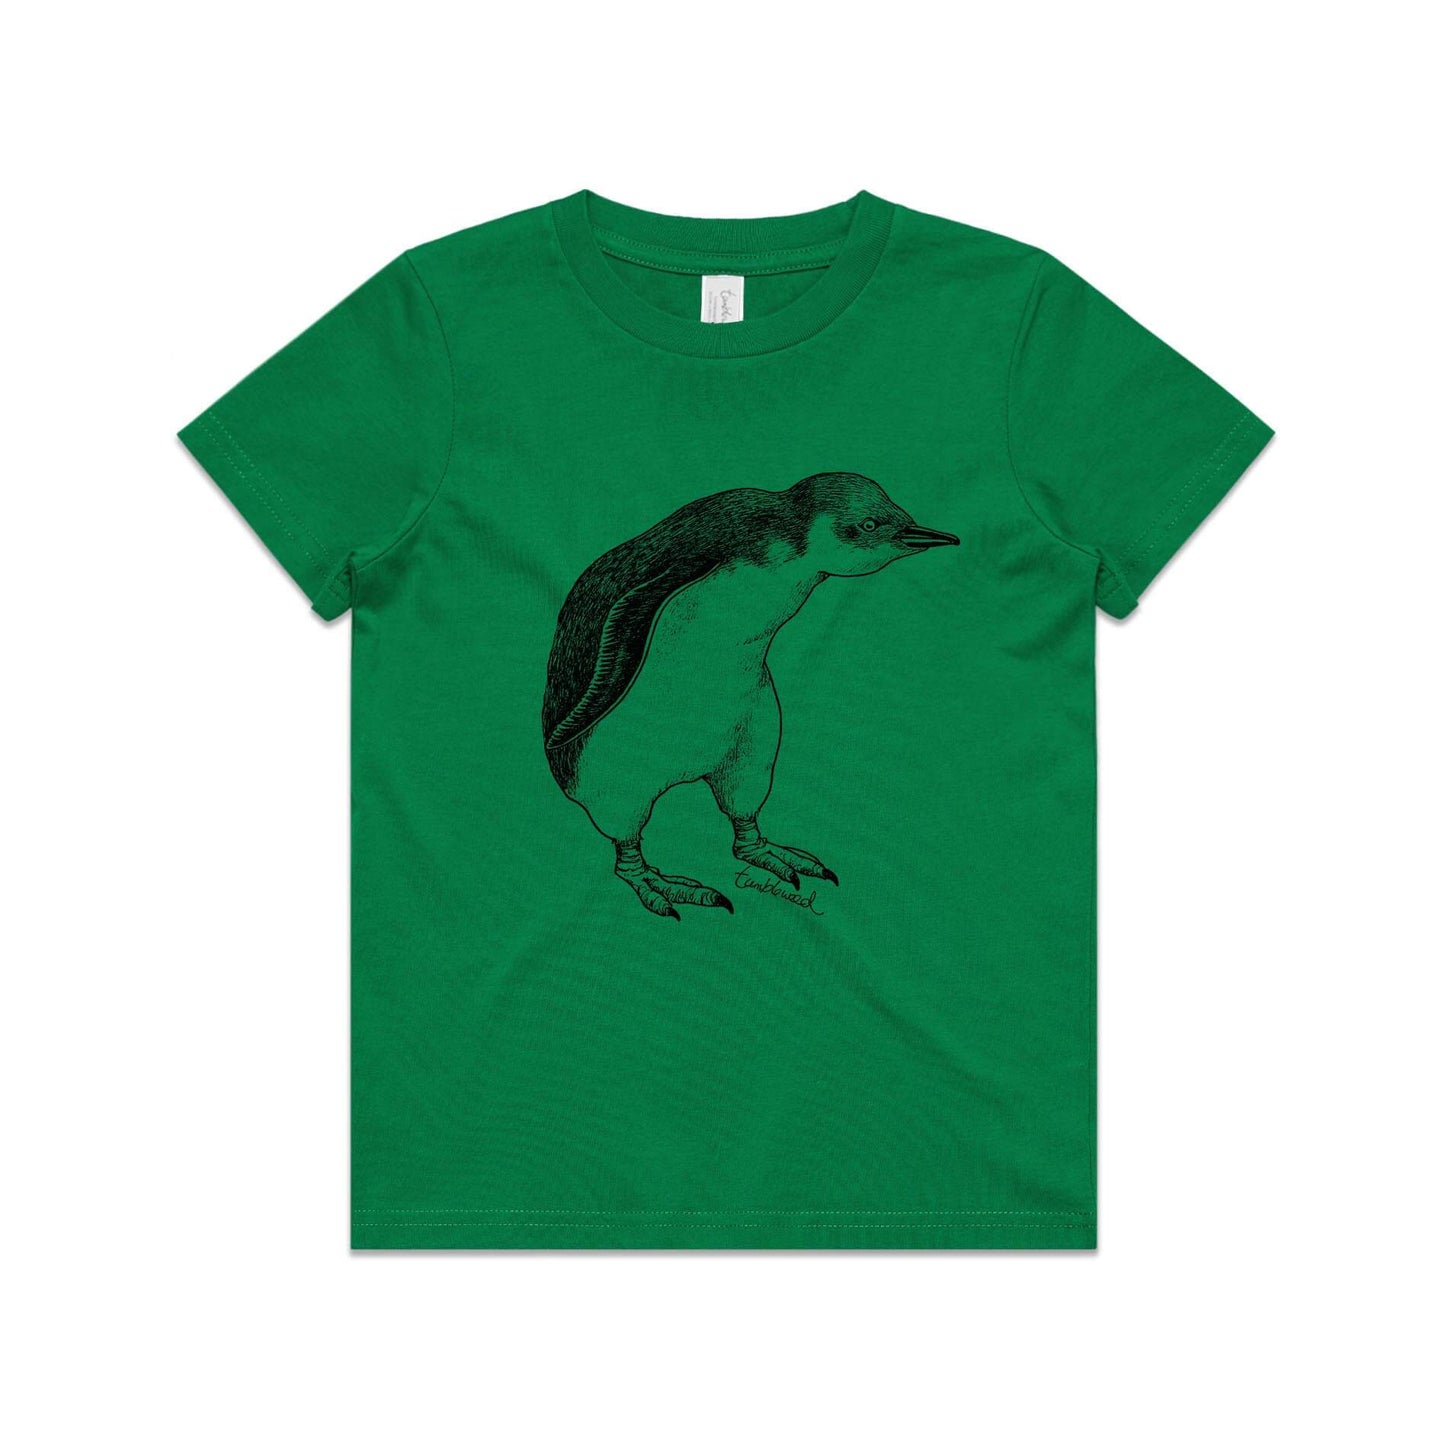 Green, cotton kids' t-shirt with screen printed Kids kororā/little penguin design.